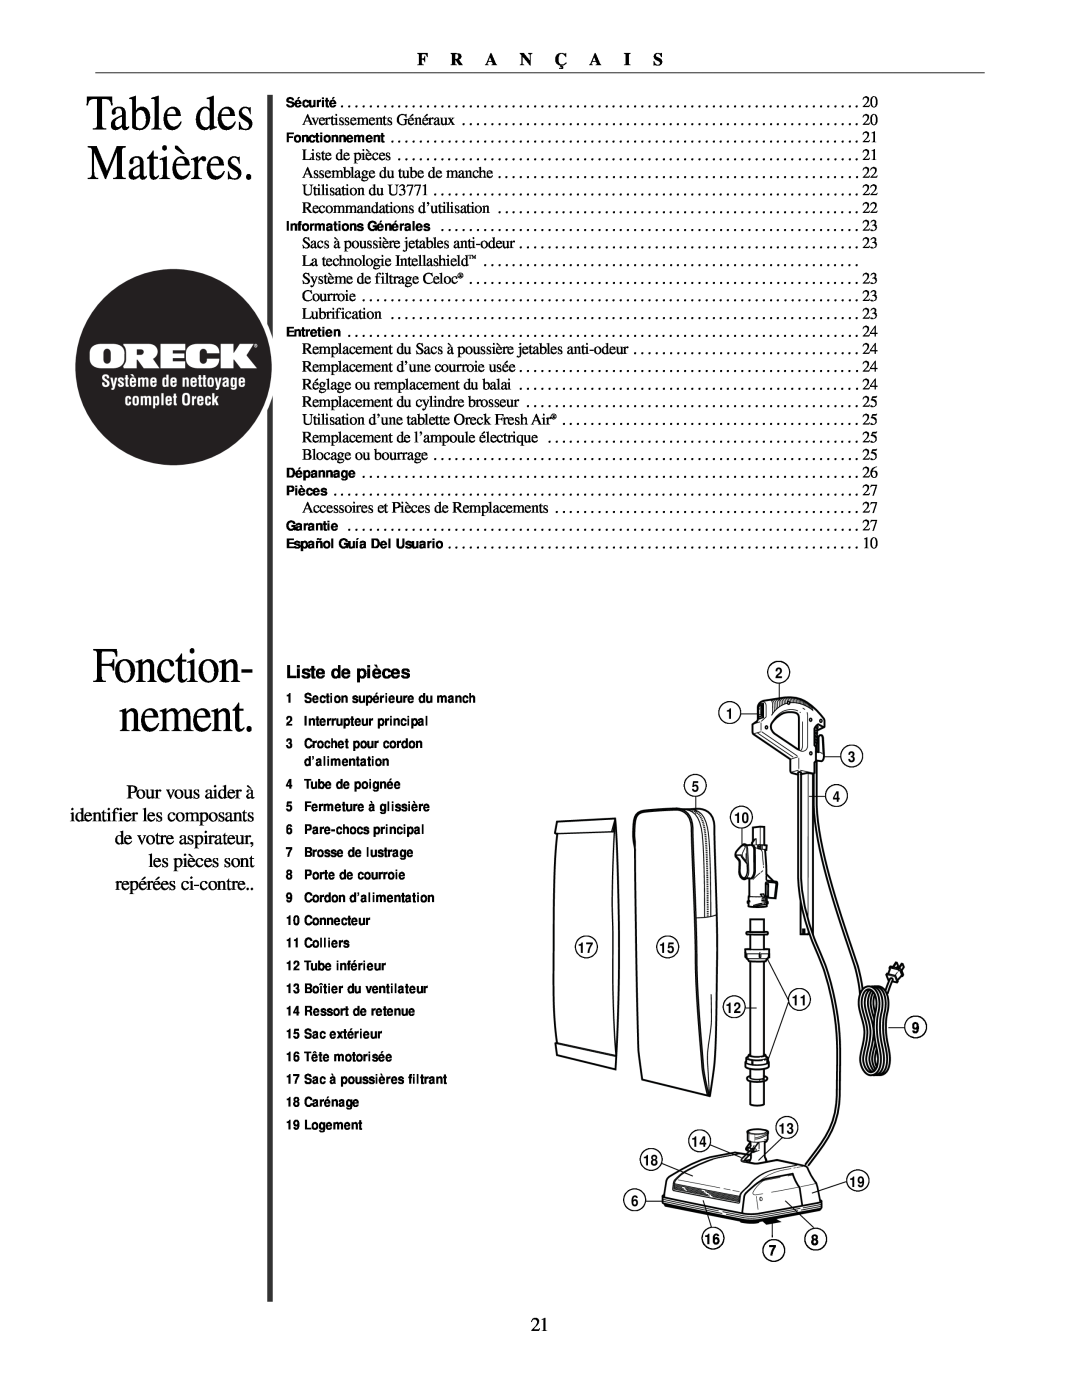 Oreck U3771 manual Table des Matières, Fonction- nement, Liste de pièces, F R A N Ç A I S 